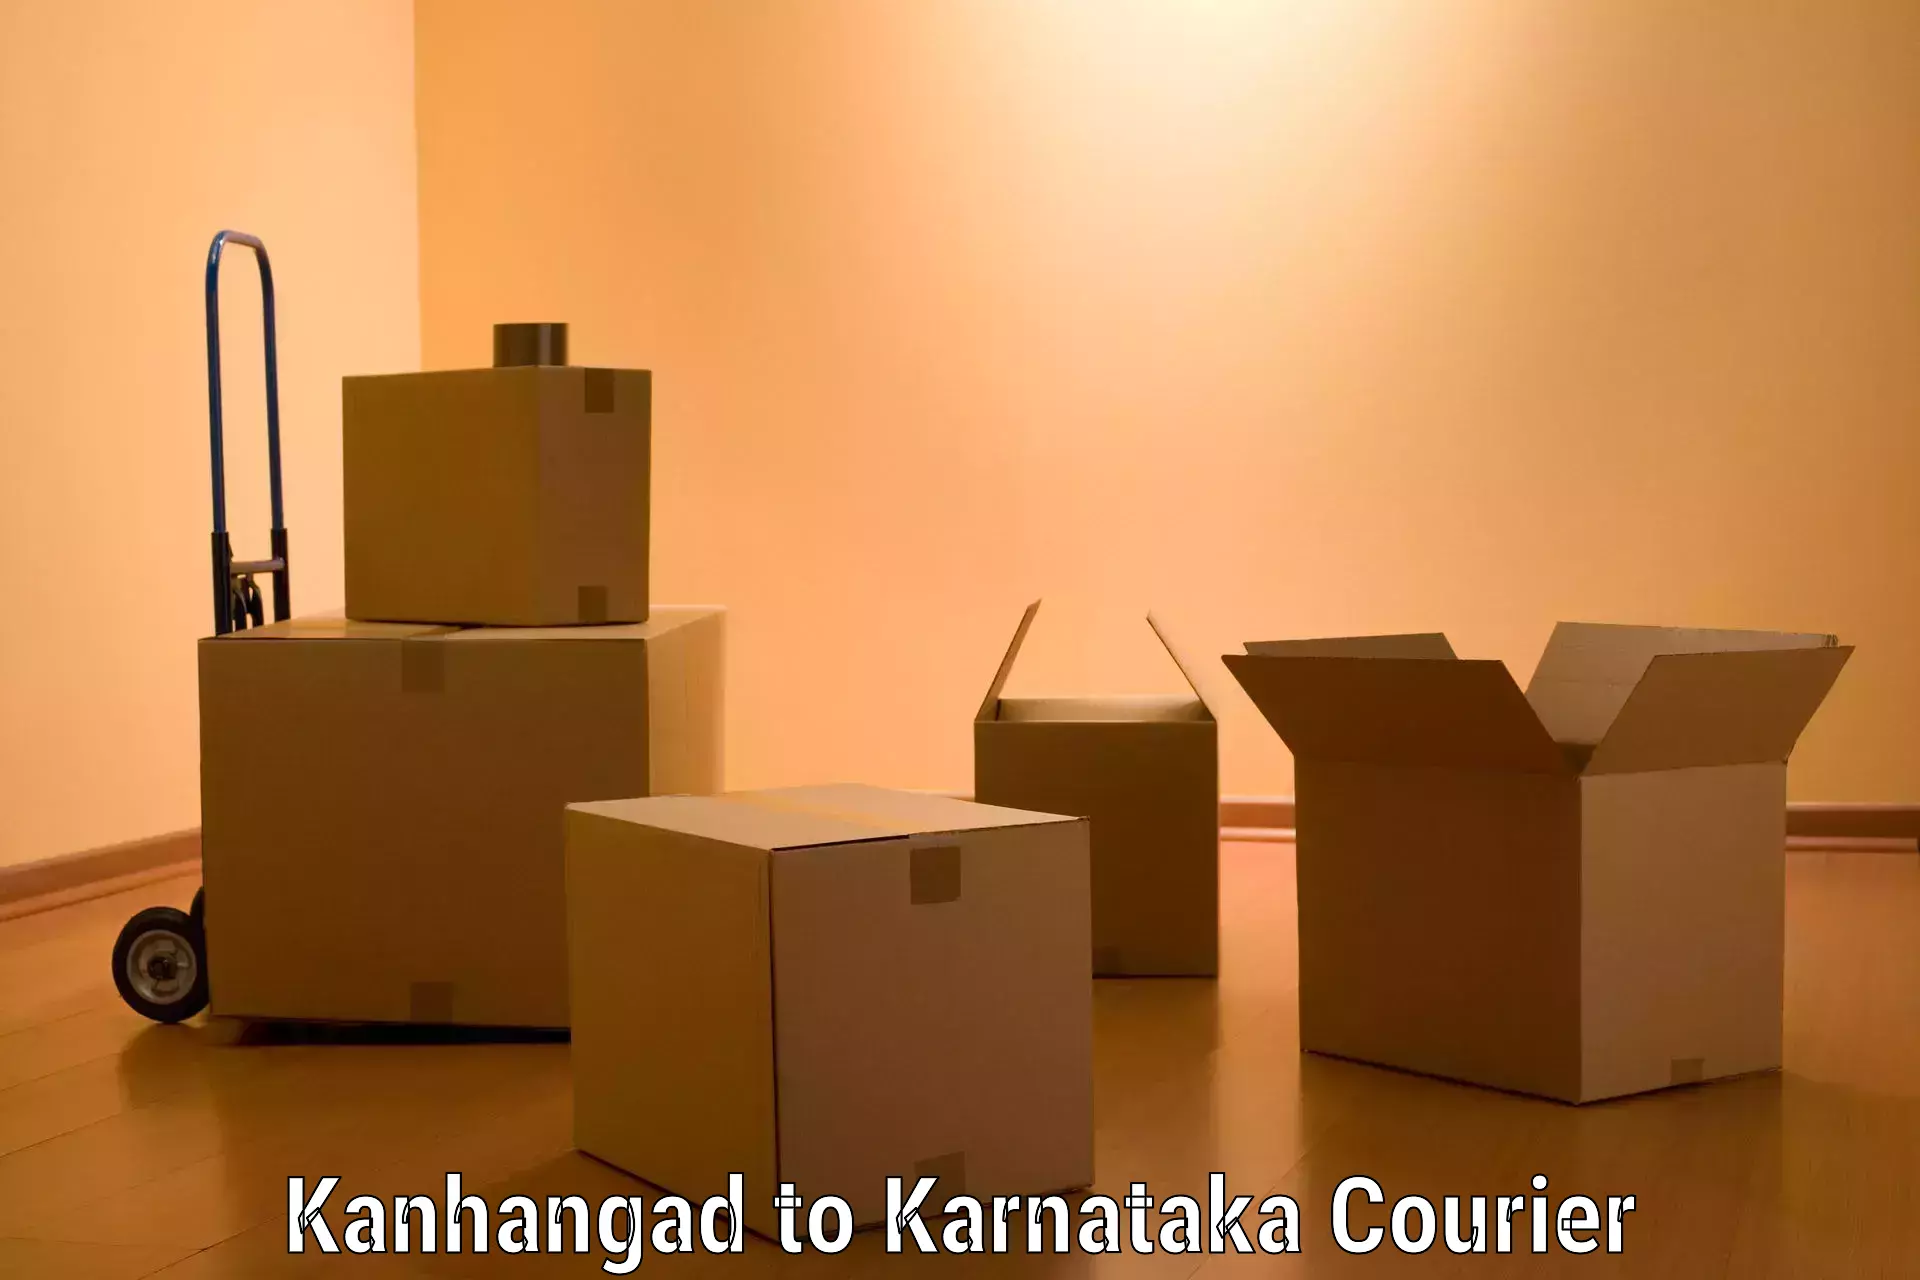 Furniture moving experts Kanhangad to Banavara